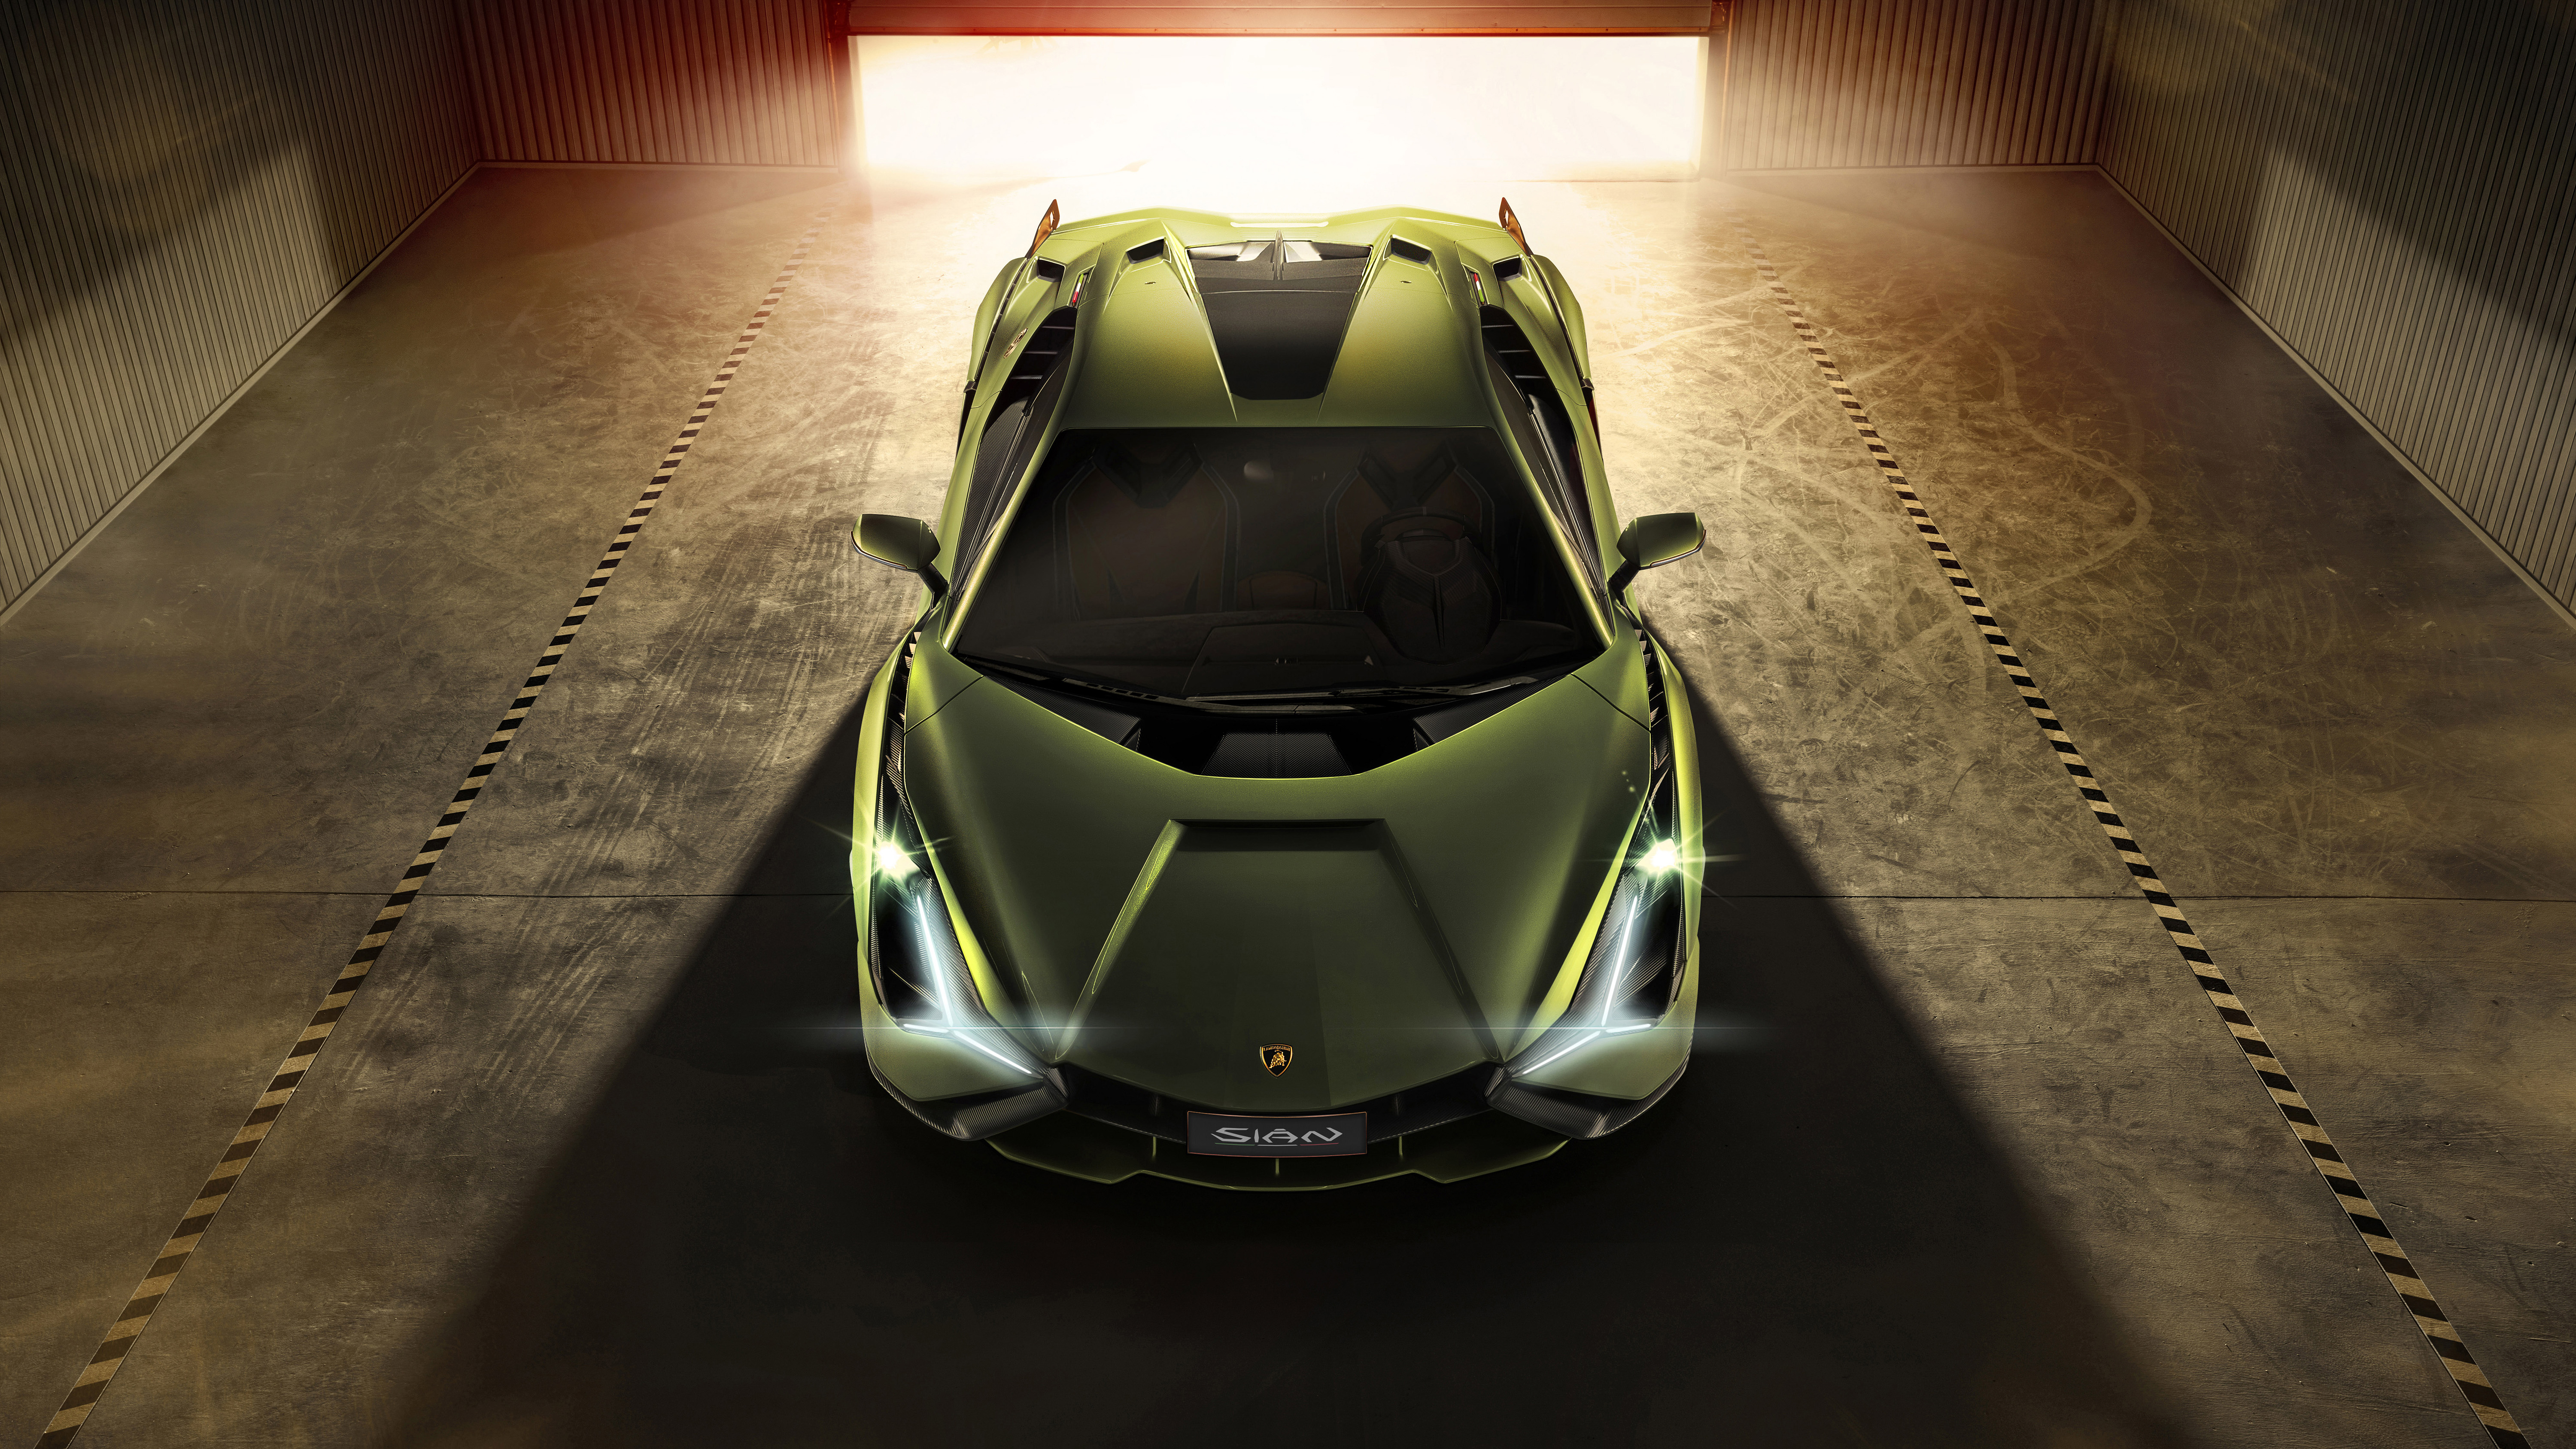 Lamborghini Sian 2019 4K 9 Wallpaper | HD Car Wallpapers | ID #13138